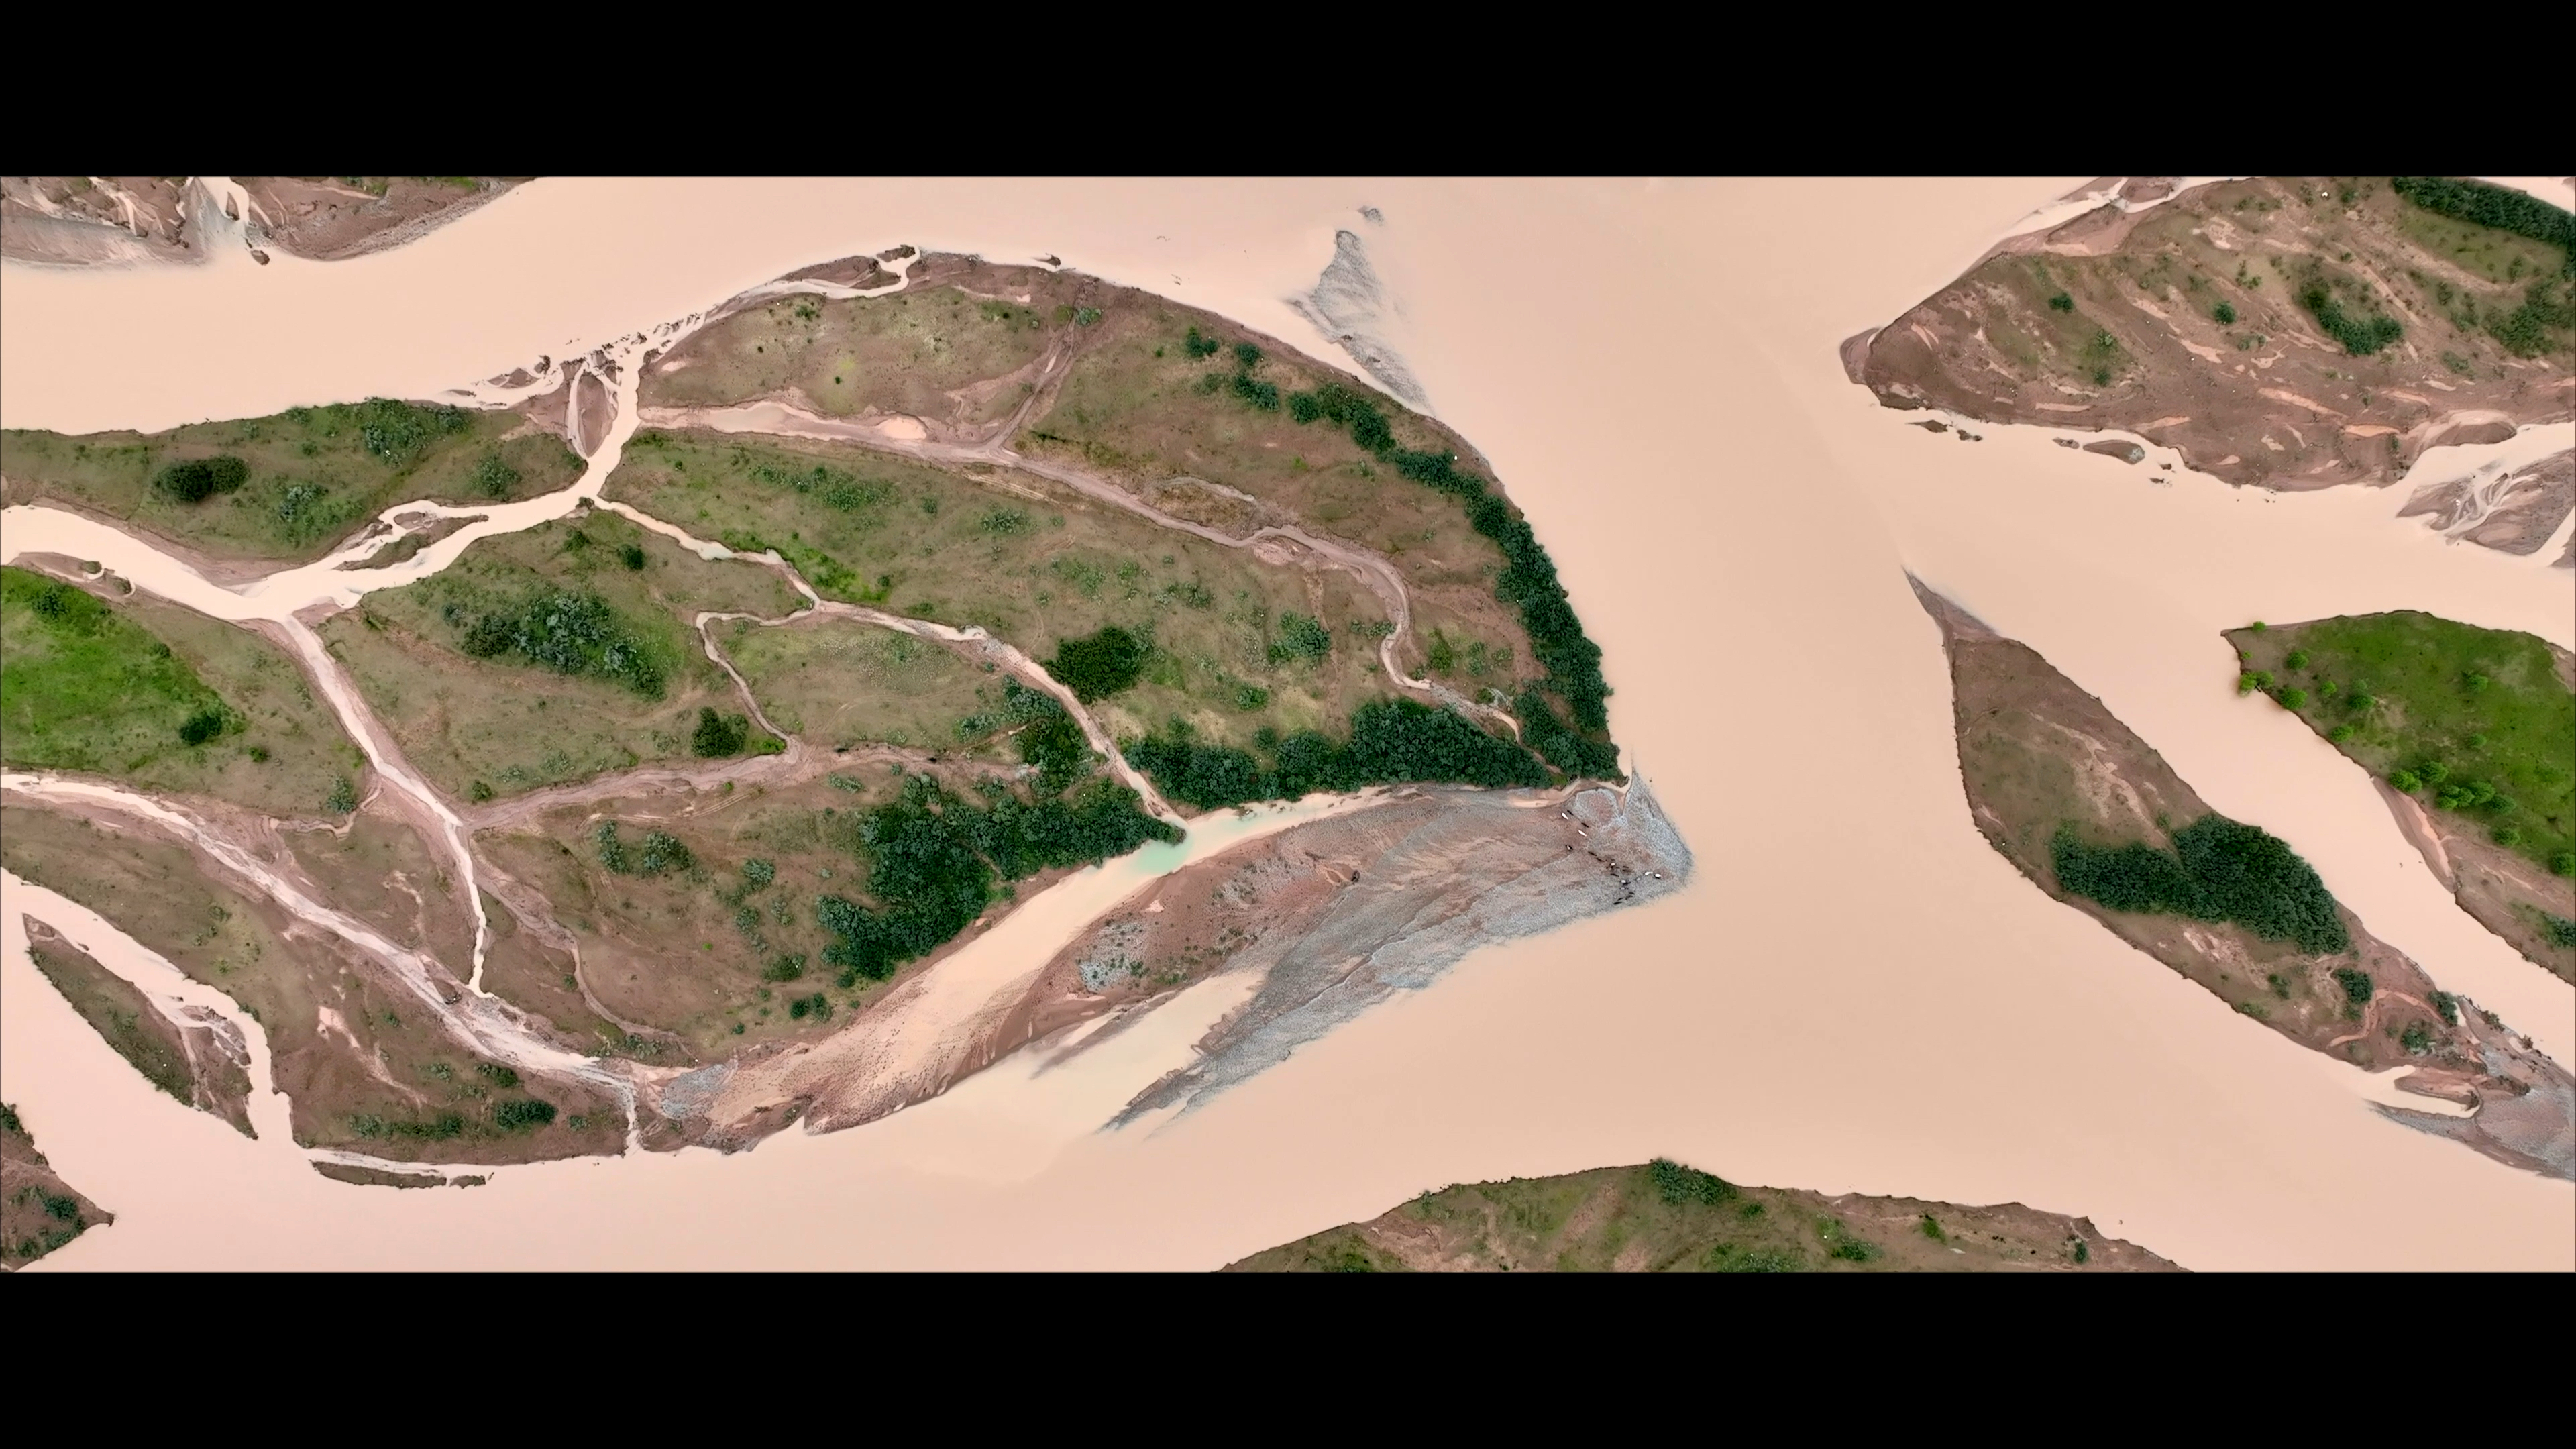 湄公河源头澜沧江，发源于玉树并横贯全境，大自然在这留下了神奇的画作，令人惊叹。囊谦县境内的扎曲河是澜